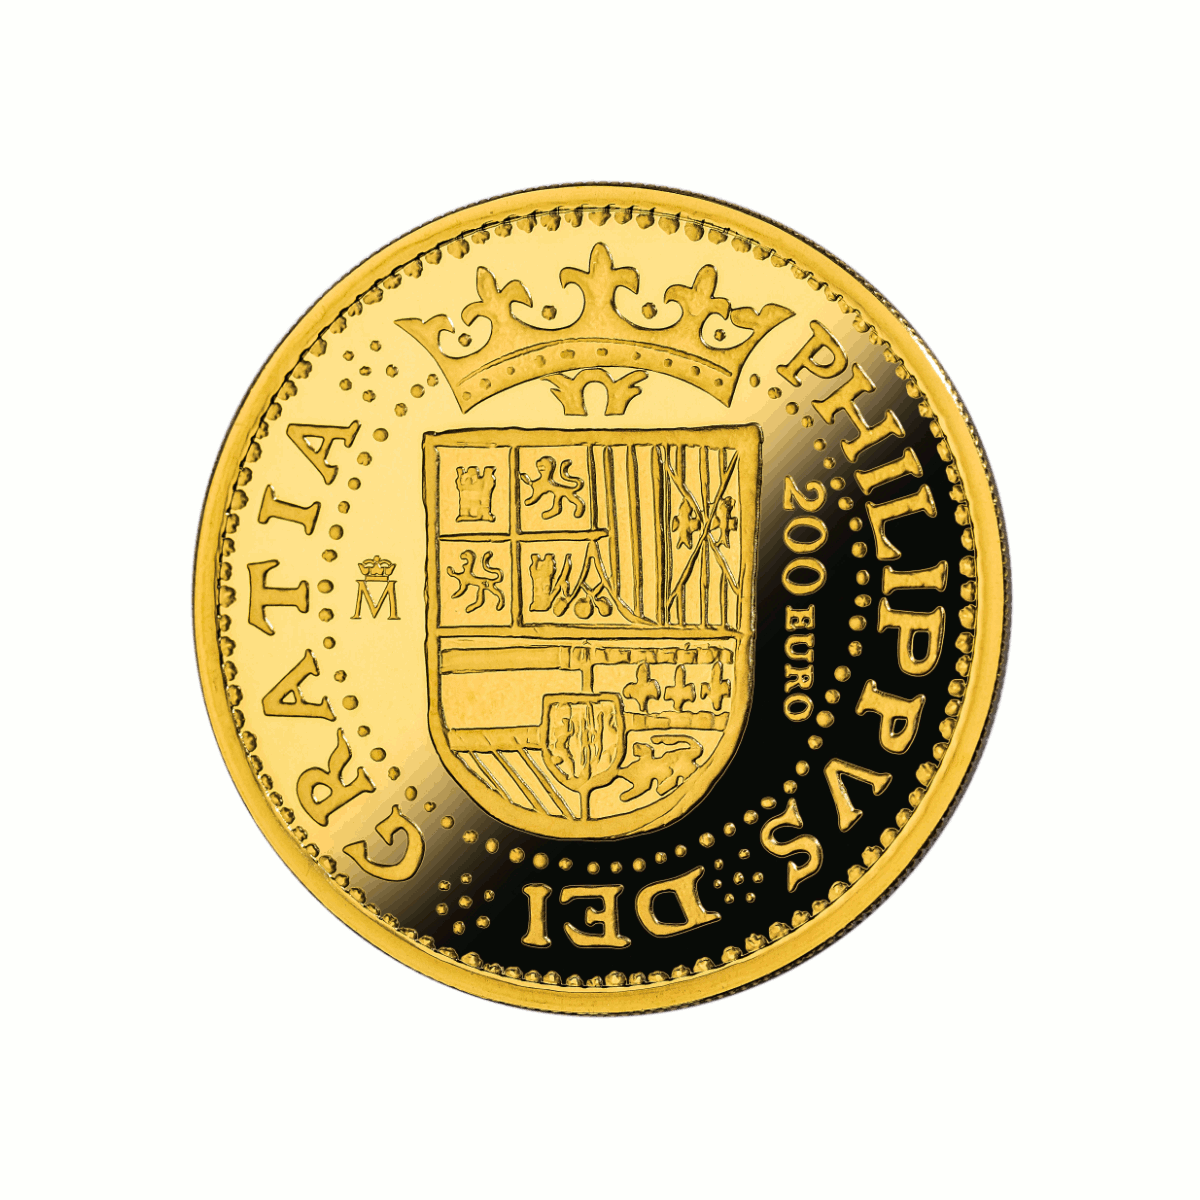 Adversen av 4 euro-minnemynten (200 Euro) med våpenskjoldet til Spania under Felipe II